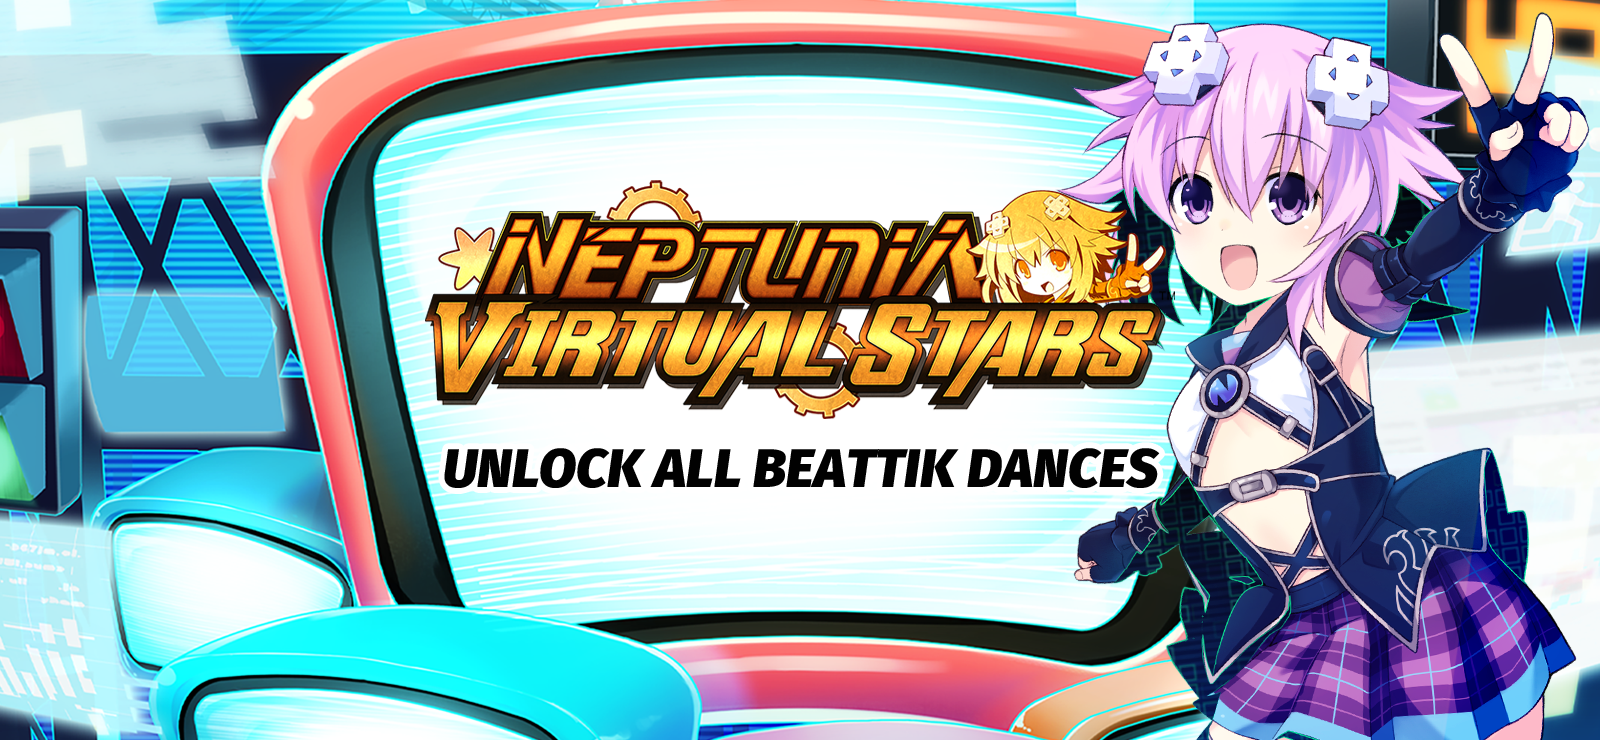 Neptunia Virtual Stars - Unlock All BeatTik Dances